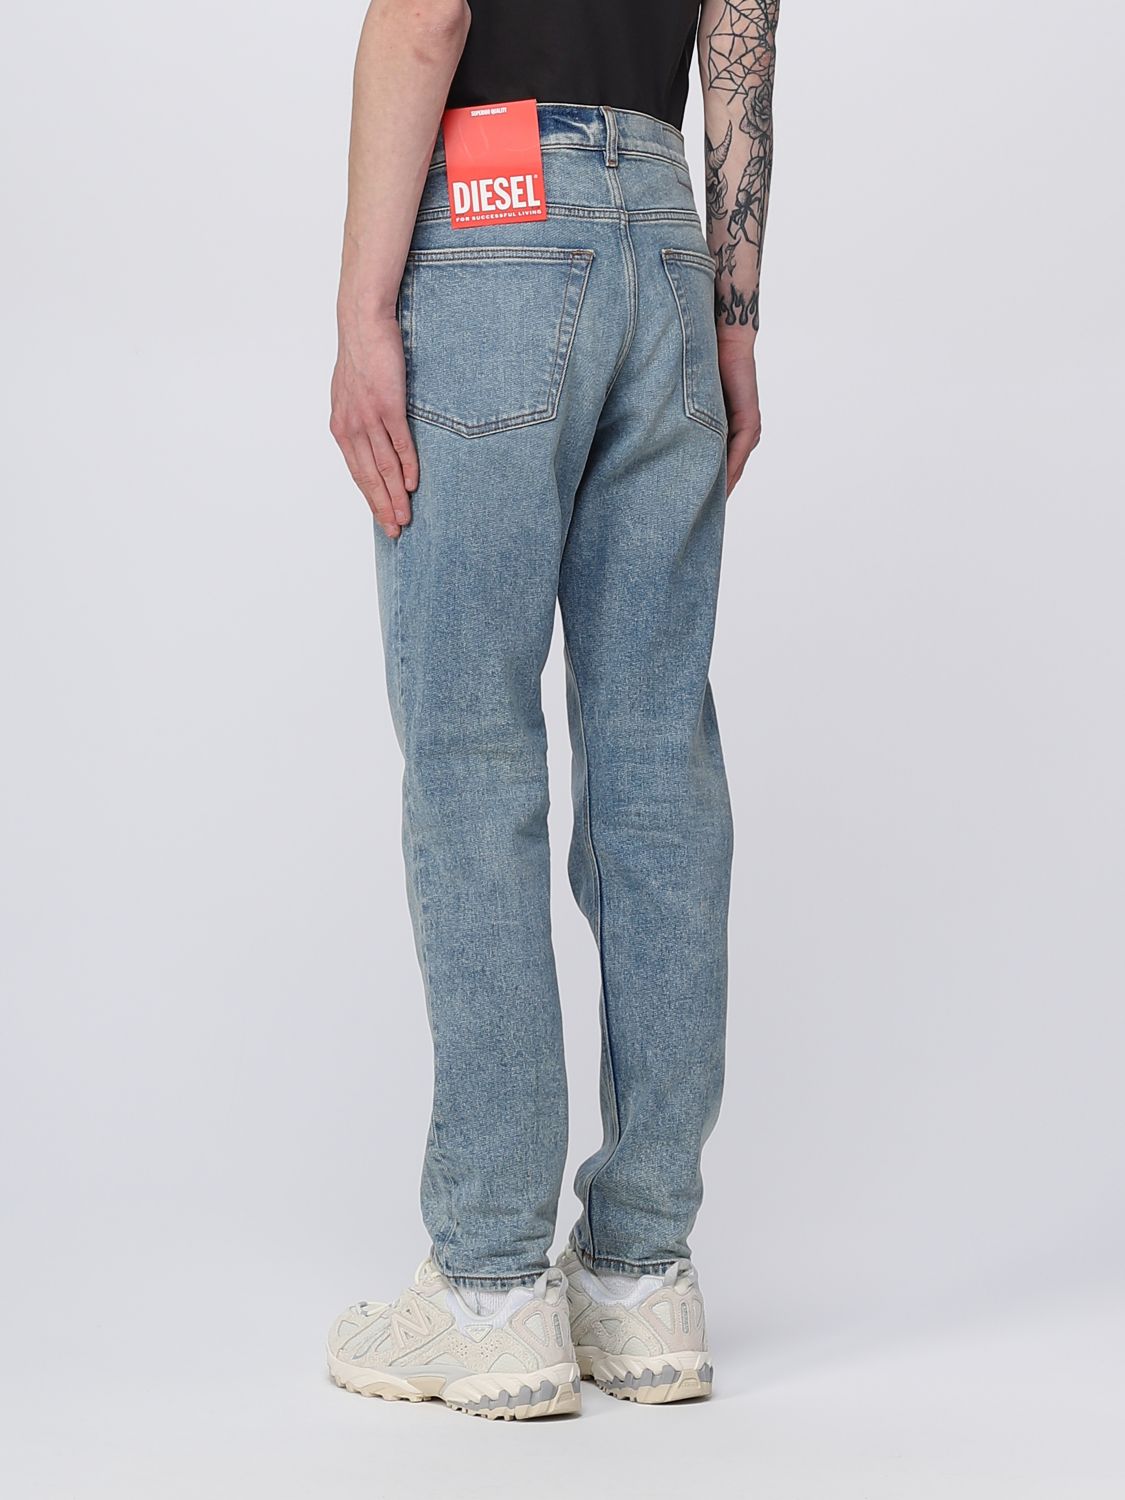 films benzine bladerdeeg DIESEL: jeans for man - Denim | Diesel jeans A0357109E86 online on  GIGLIO.COM